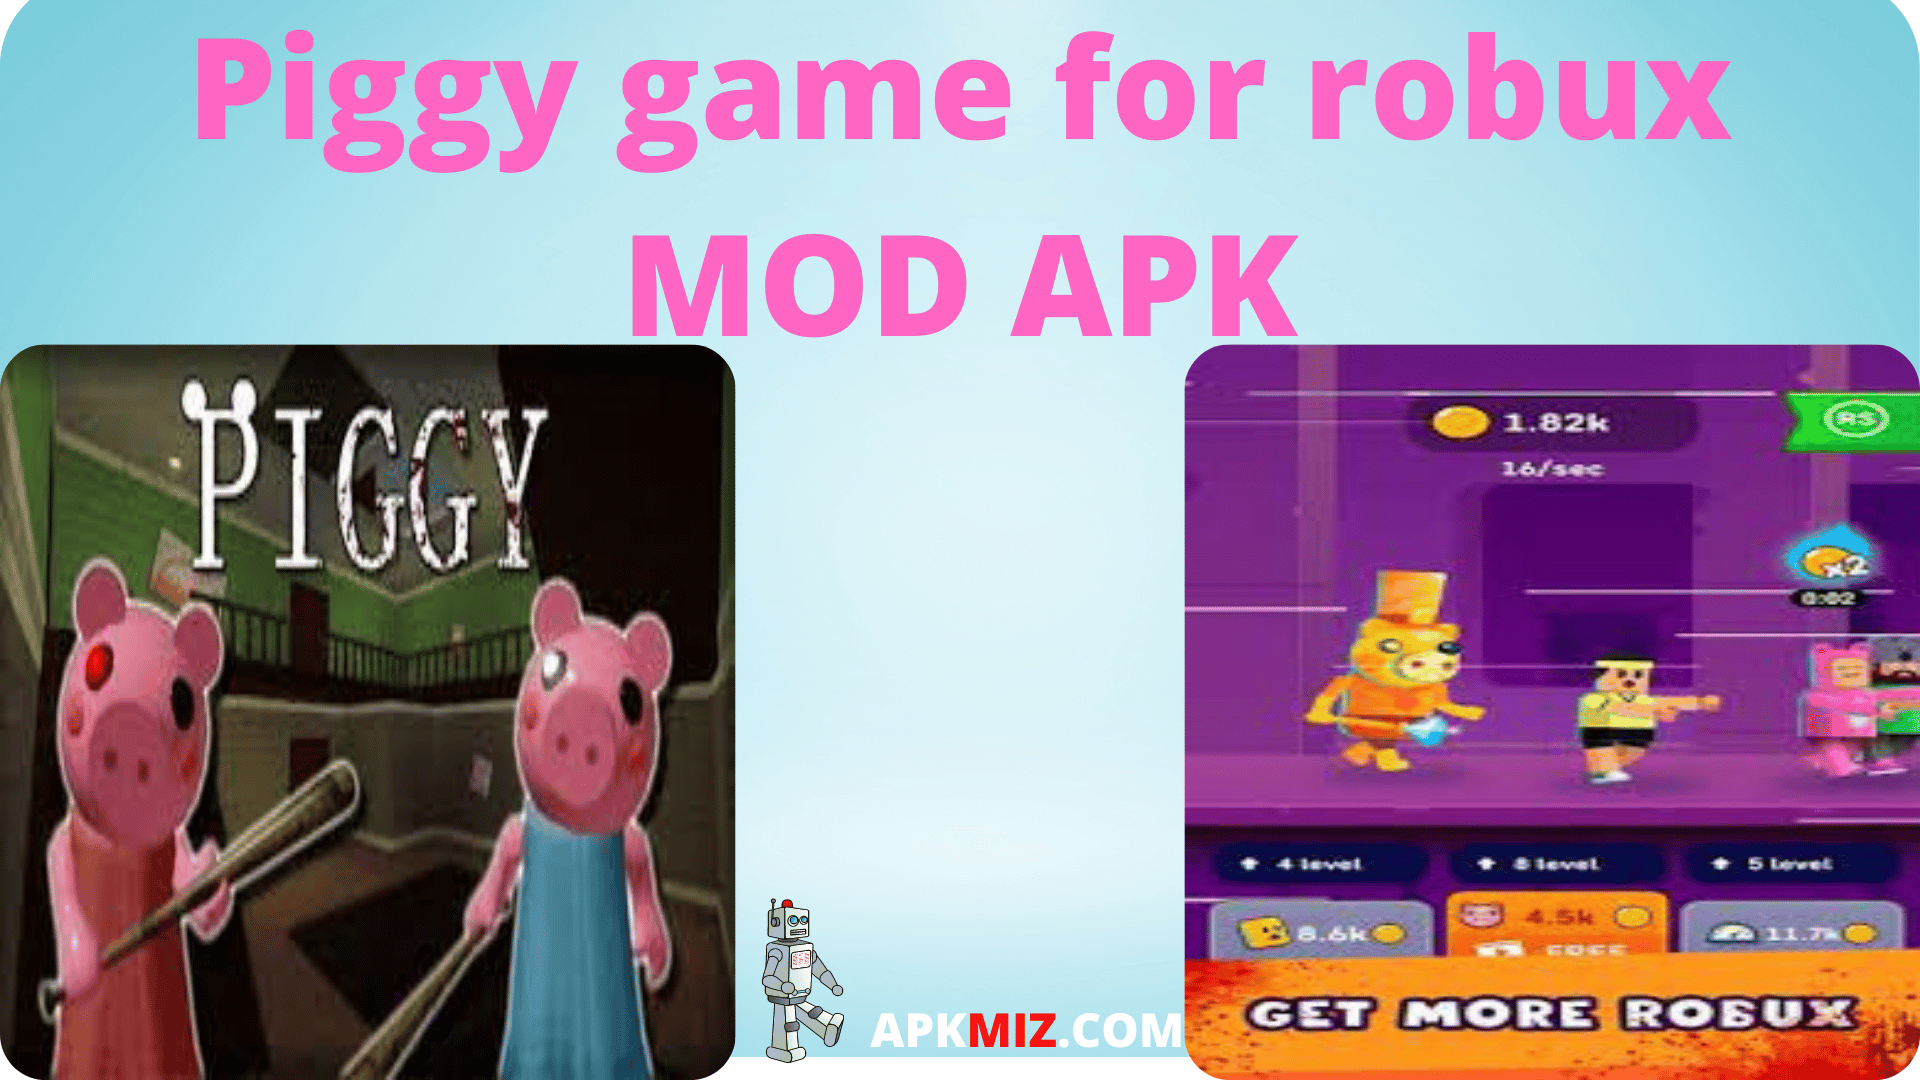 Piggy game for robux MOD APK